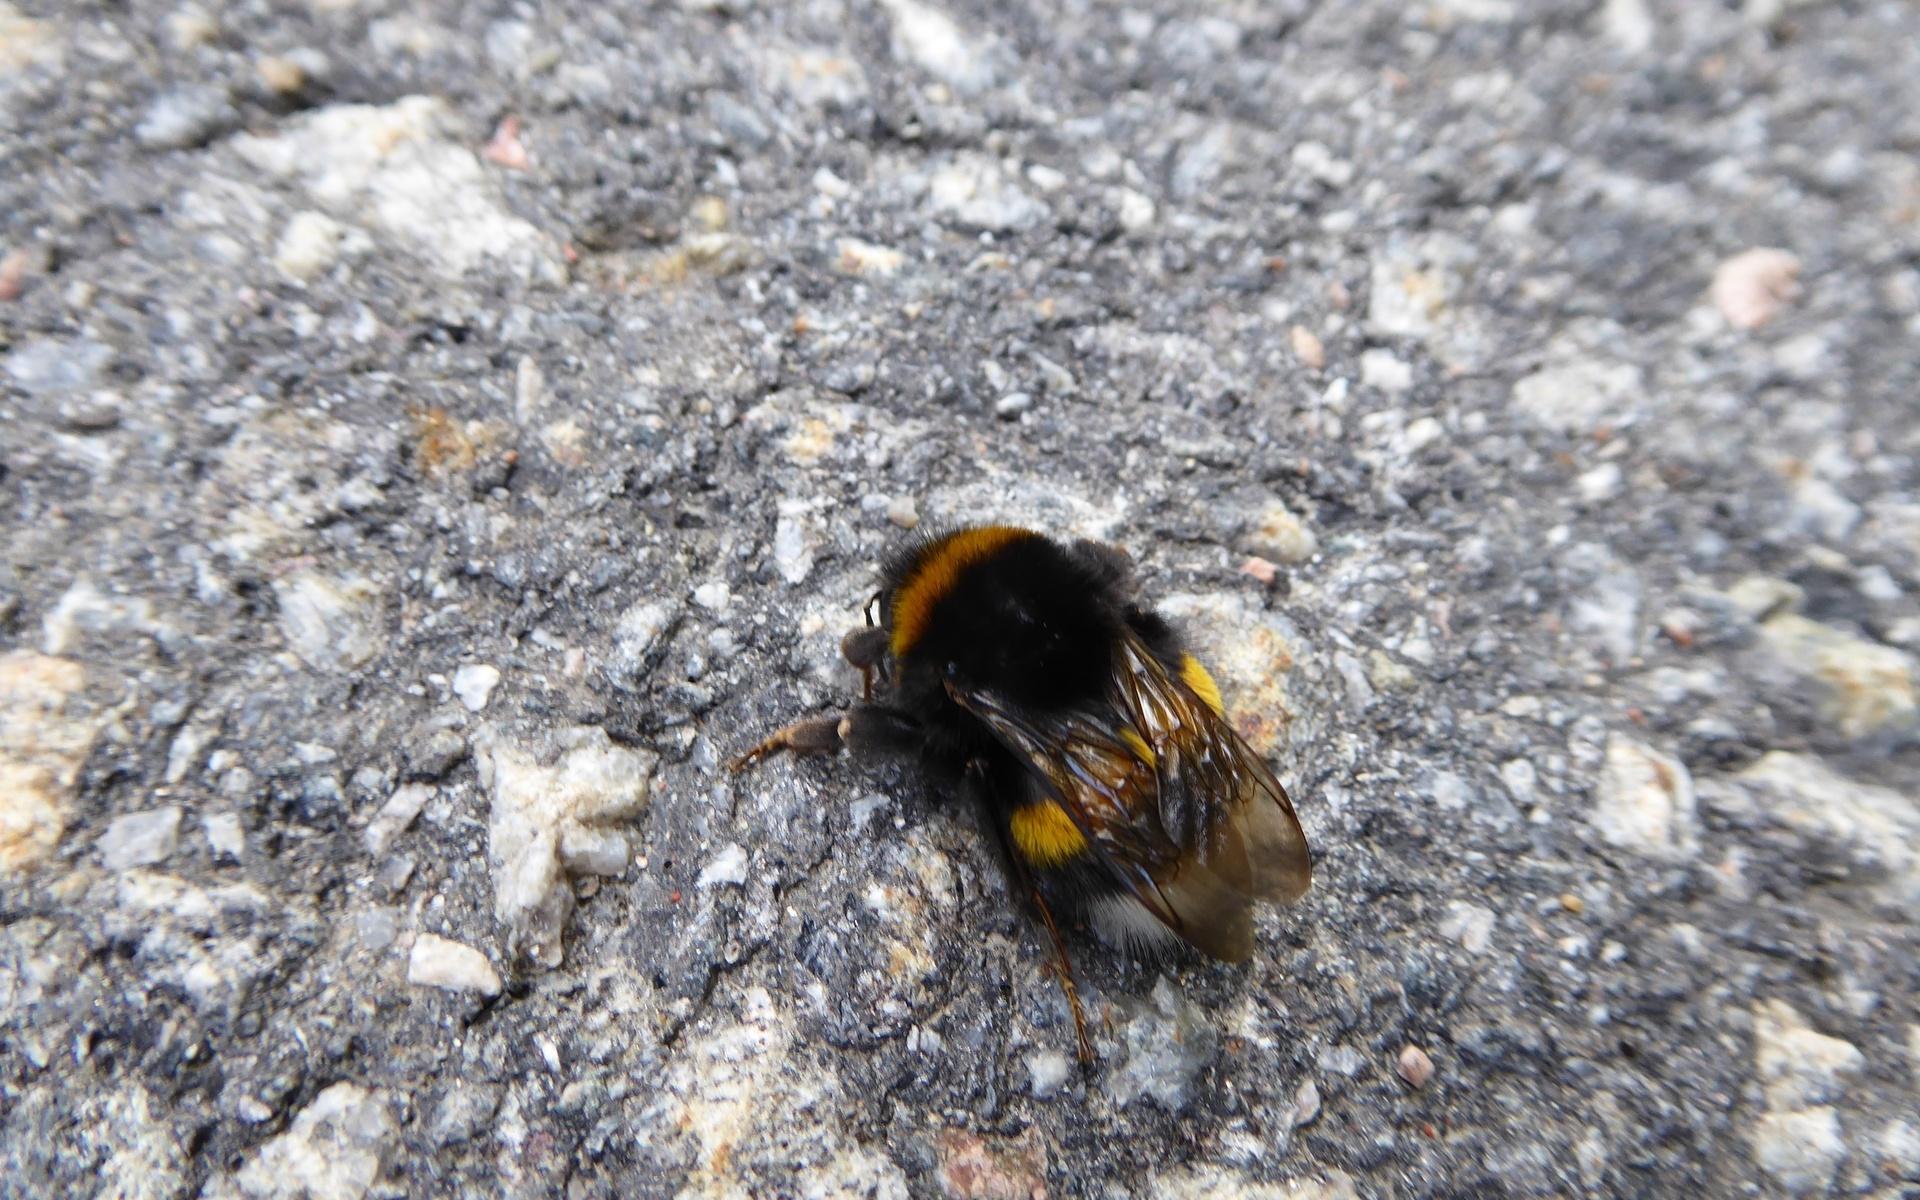 Brist på pollen och nektar kan vara en av förklaringarna till att humlorna kryper på marken.